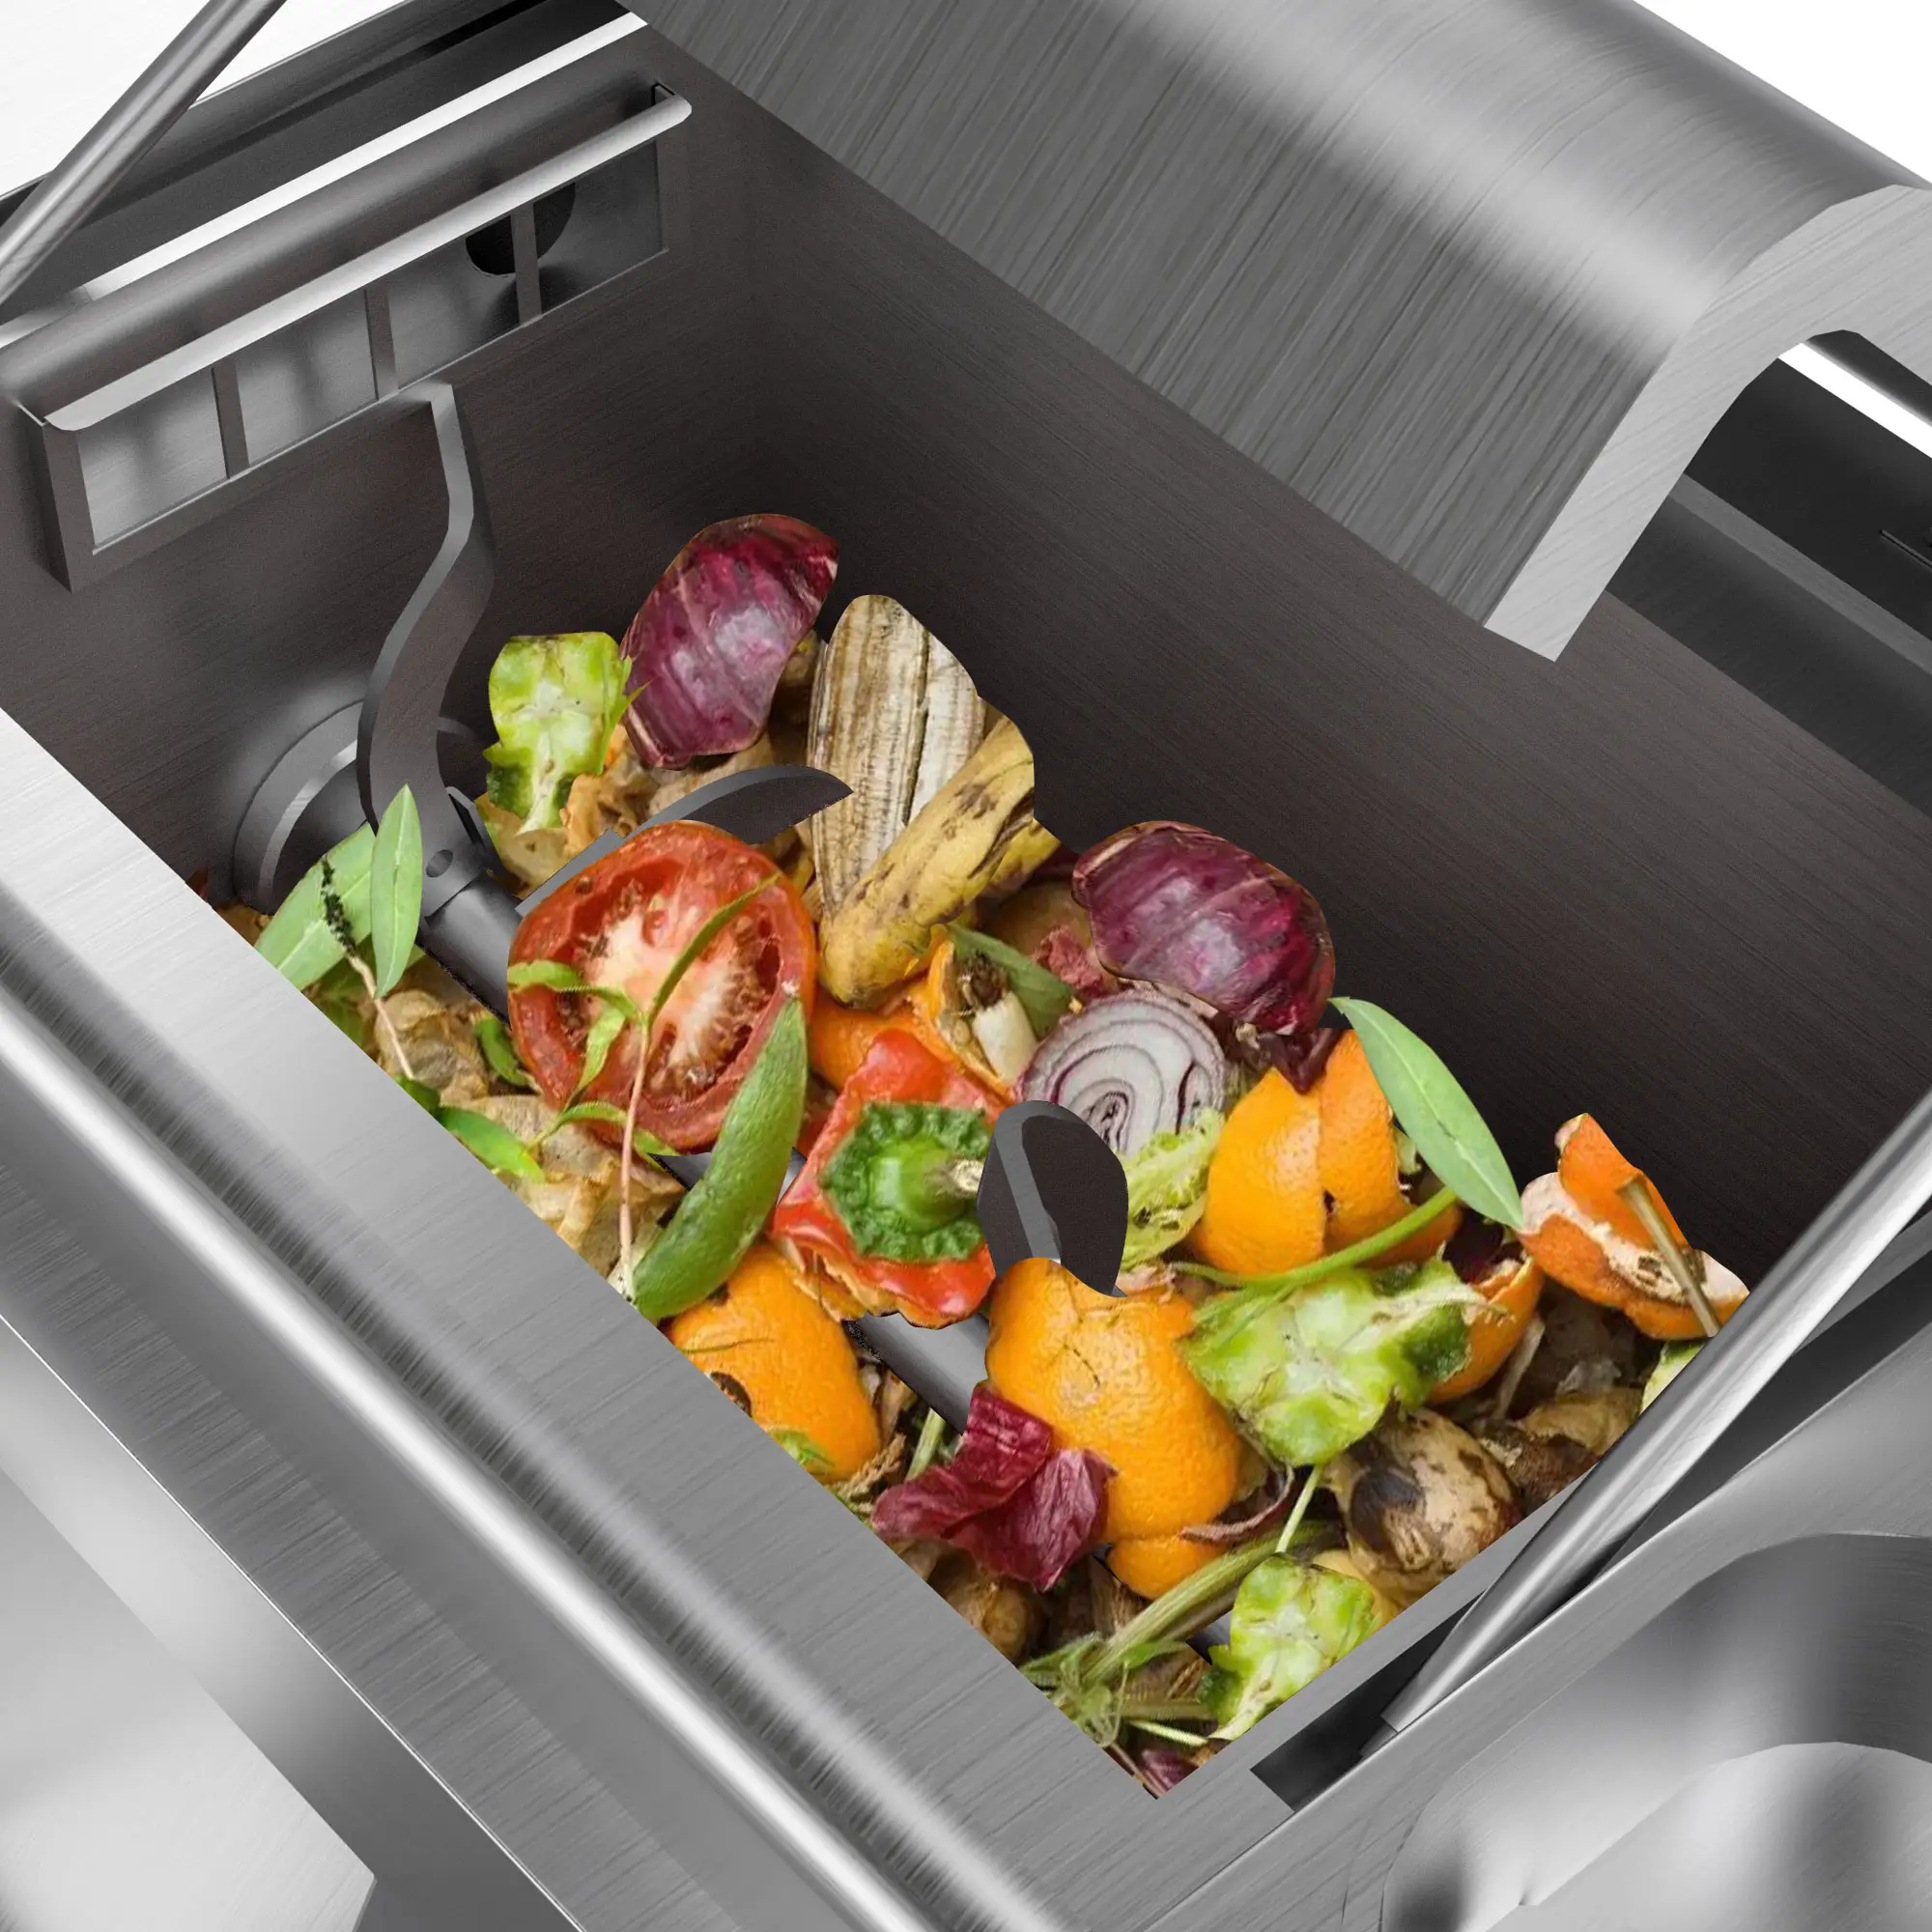 آلة التخلص من نفايات الطعام بسعة 50 كجم من sunefun، آلة التخلص من القمامة مع التحلل المُدمج وإعادة التدوير لتحلل نفايات الطعام بشكل فعال